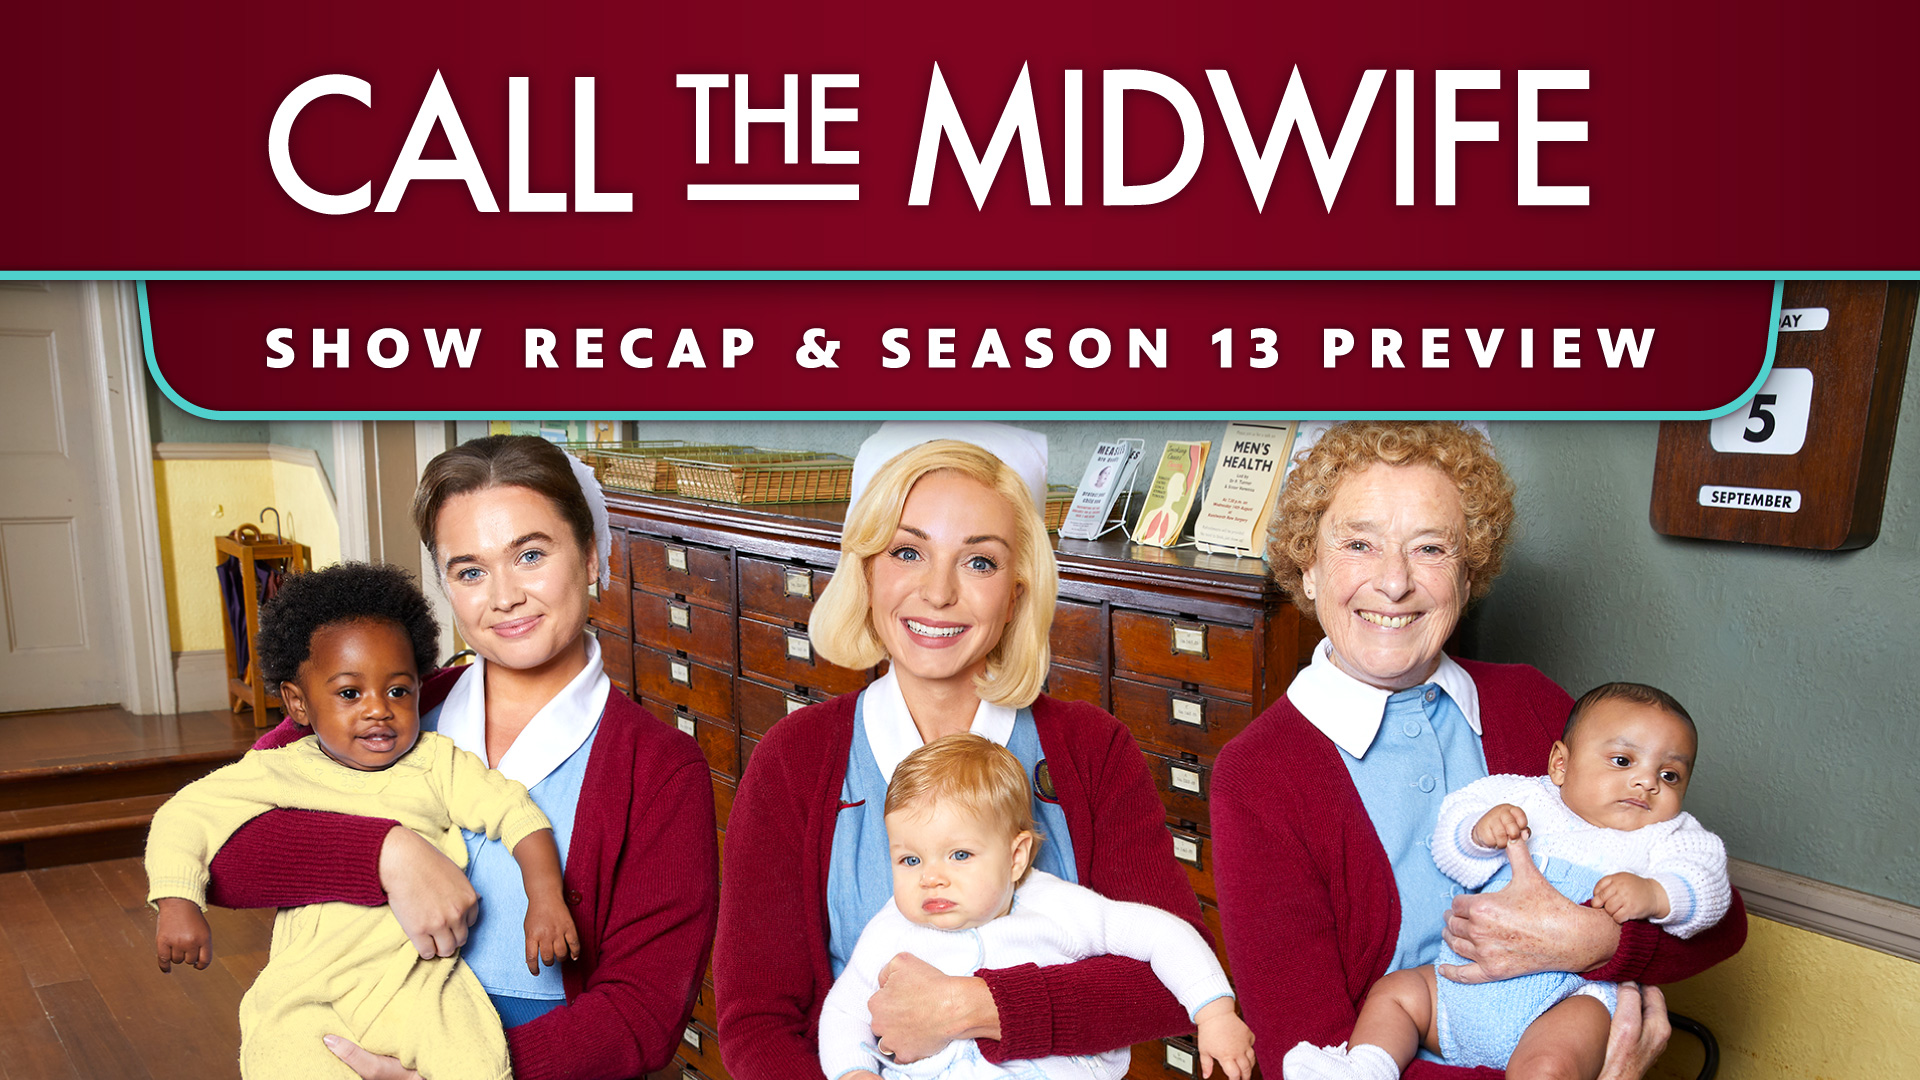 Call the Midwife: Show Recap & Season 13 Preview